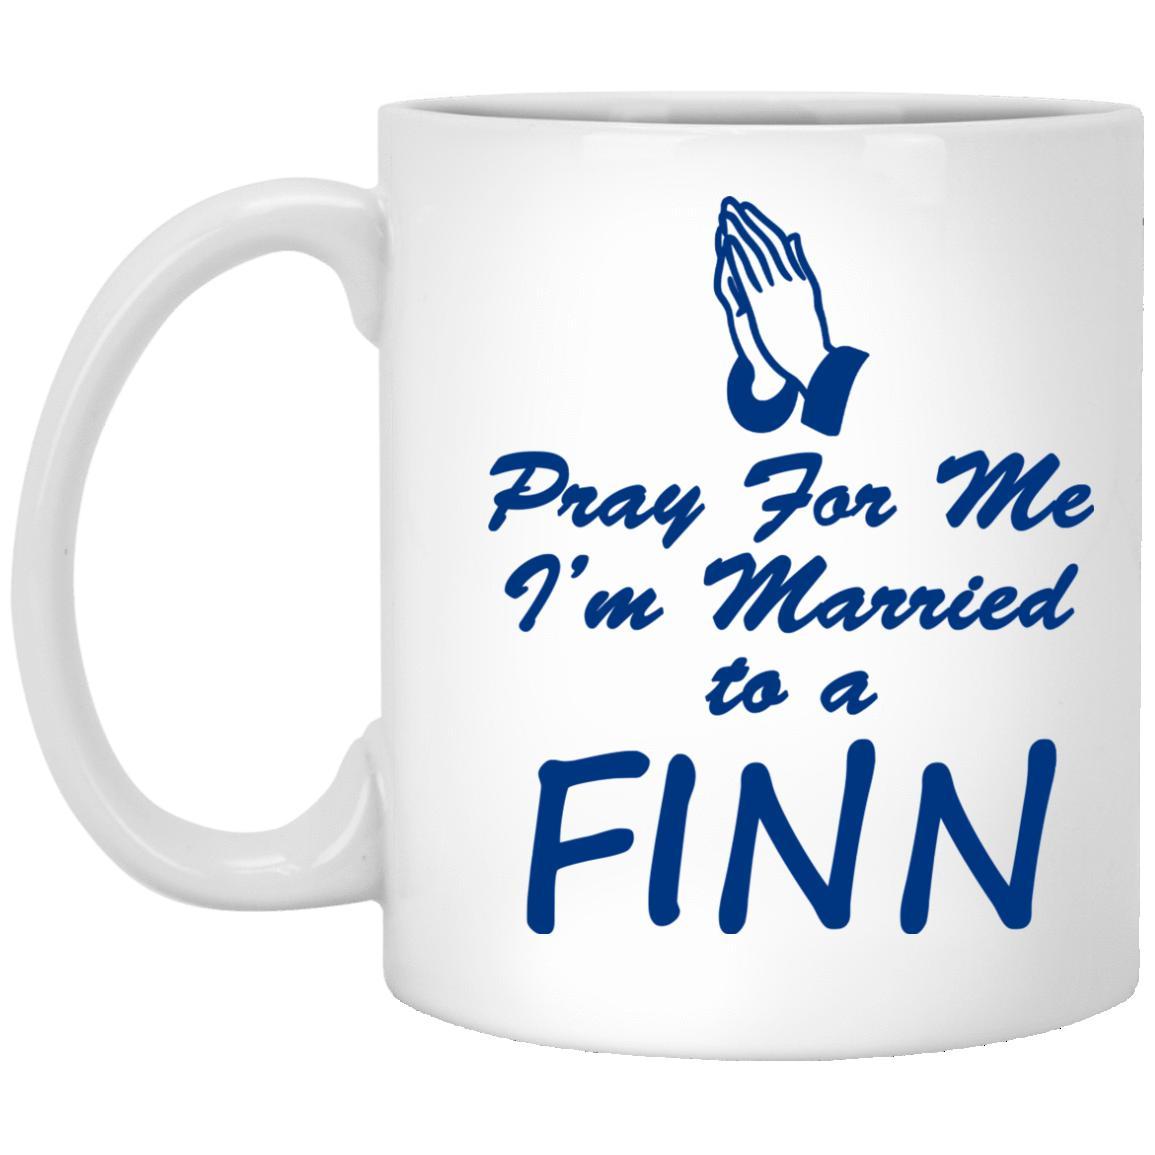 Pray For Finn Finnish Mug Finnish Gift